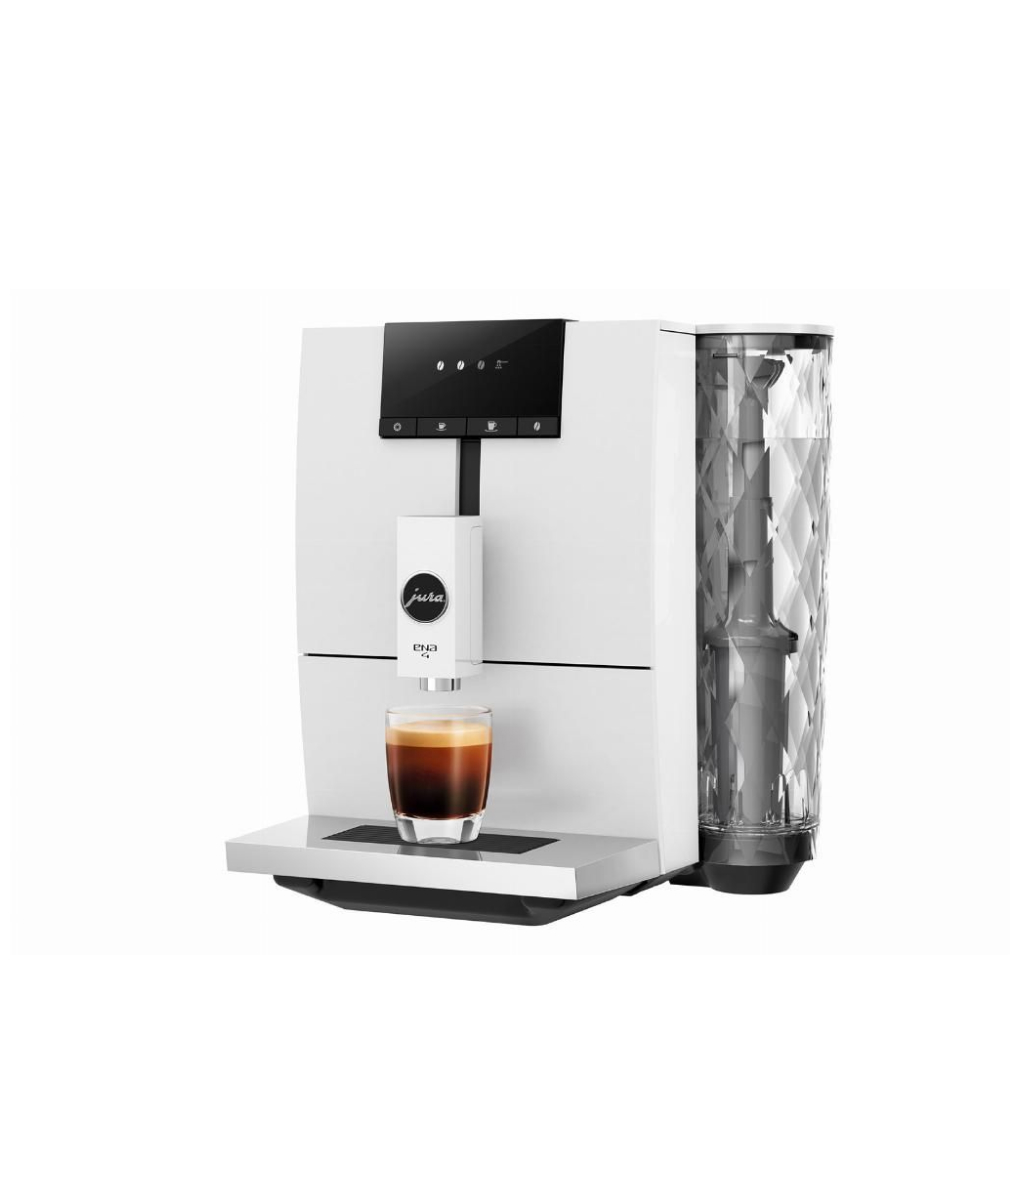 Incapto Coffee - ✨ NOVEDAD INCAPTO Incapto Coffee , el mejor #CaféEnGrano  apuesta por el líder en tecnología de #cafeteras superautomáticas de jura.  🤩 Os presentamos el nuevo modelo de cafetera #Jura